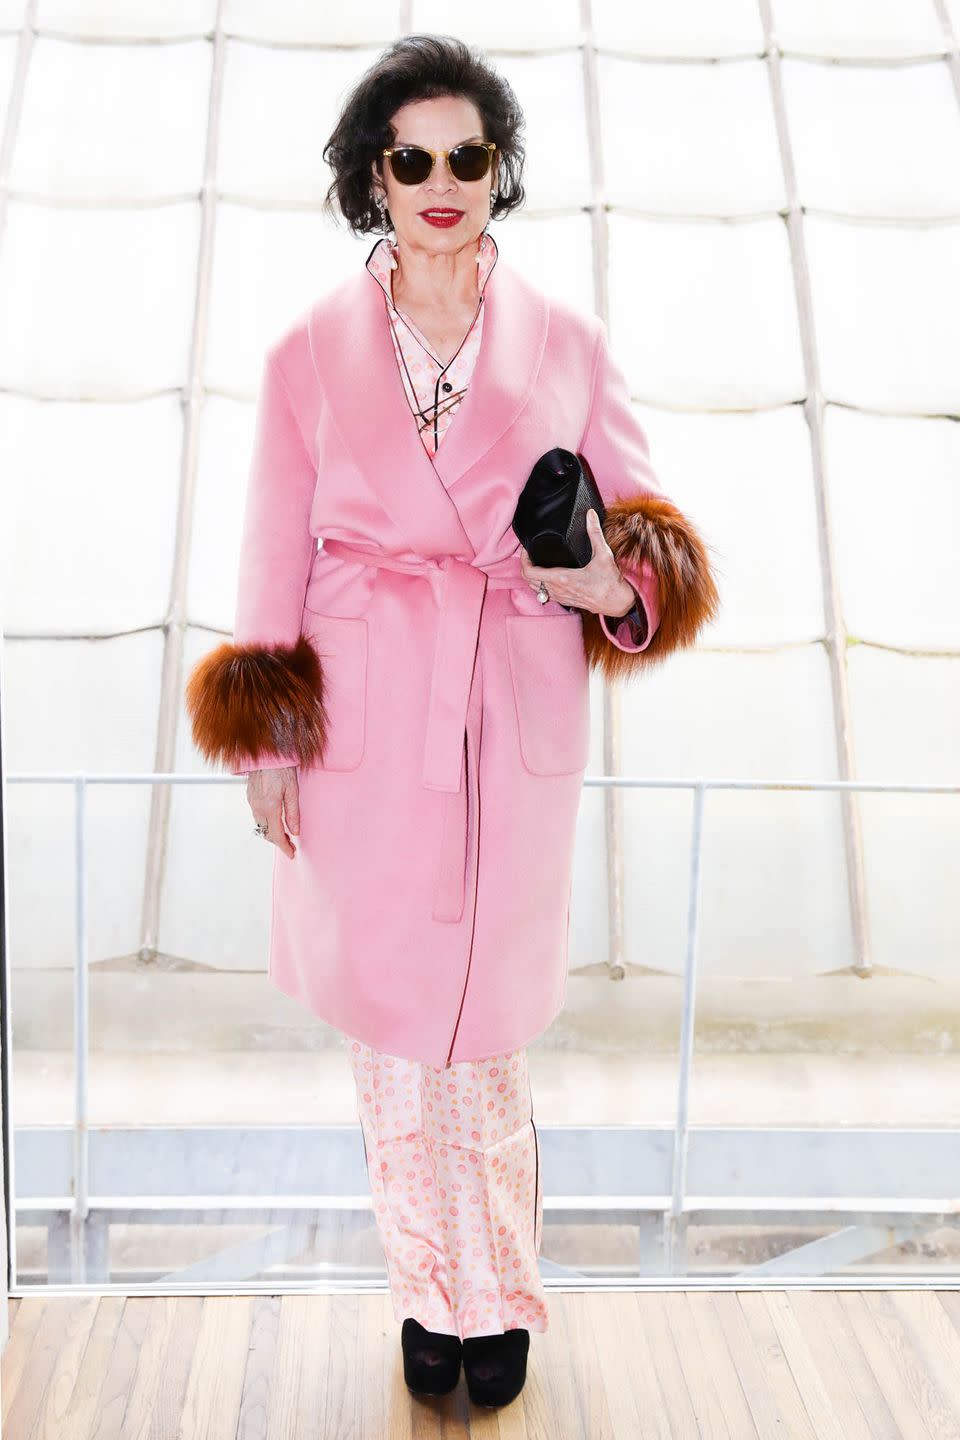 Susan Sarandon's Velvet-y Cannes Look Wins Her Best Dressed of the Week